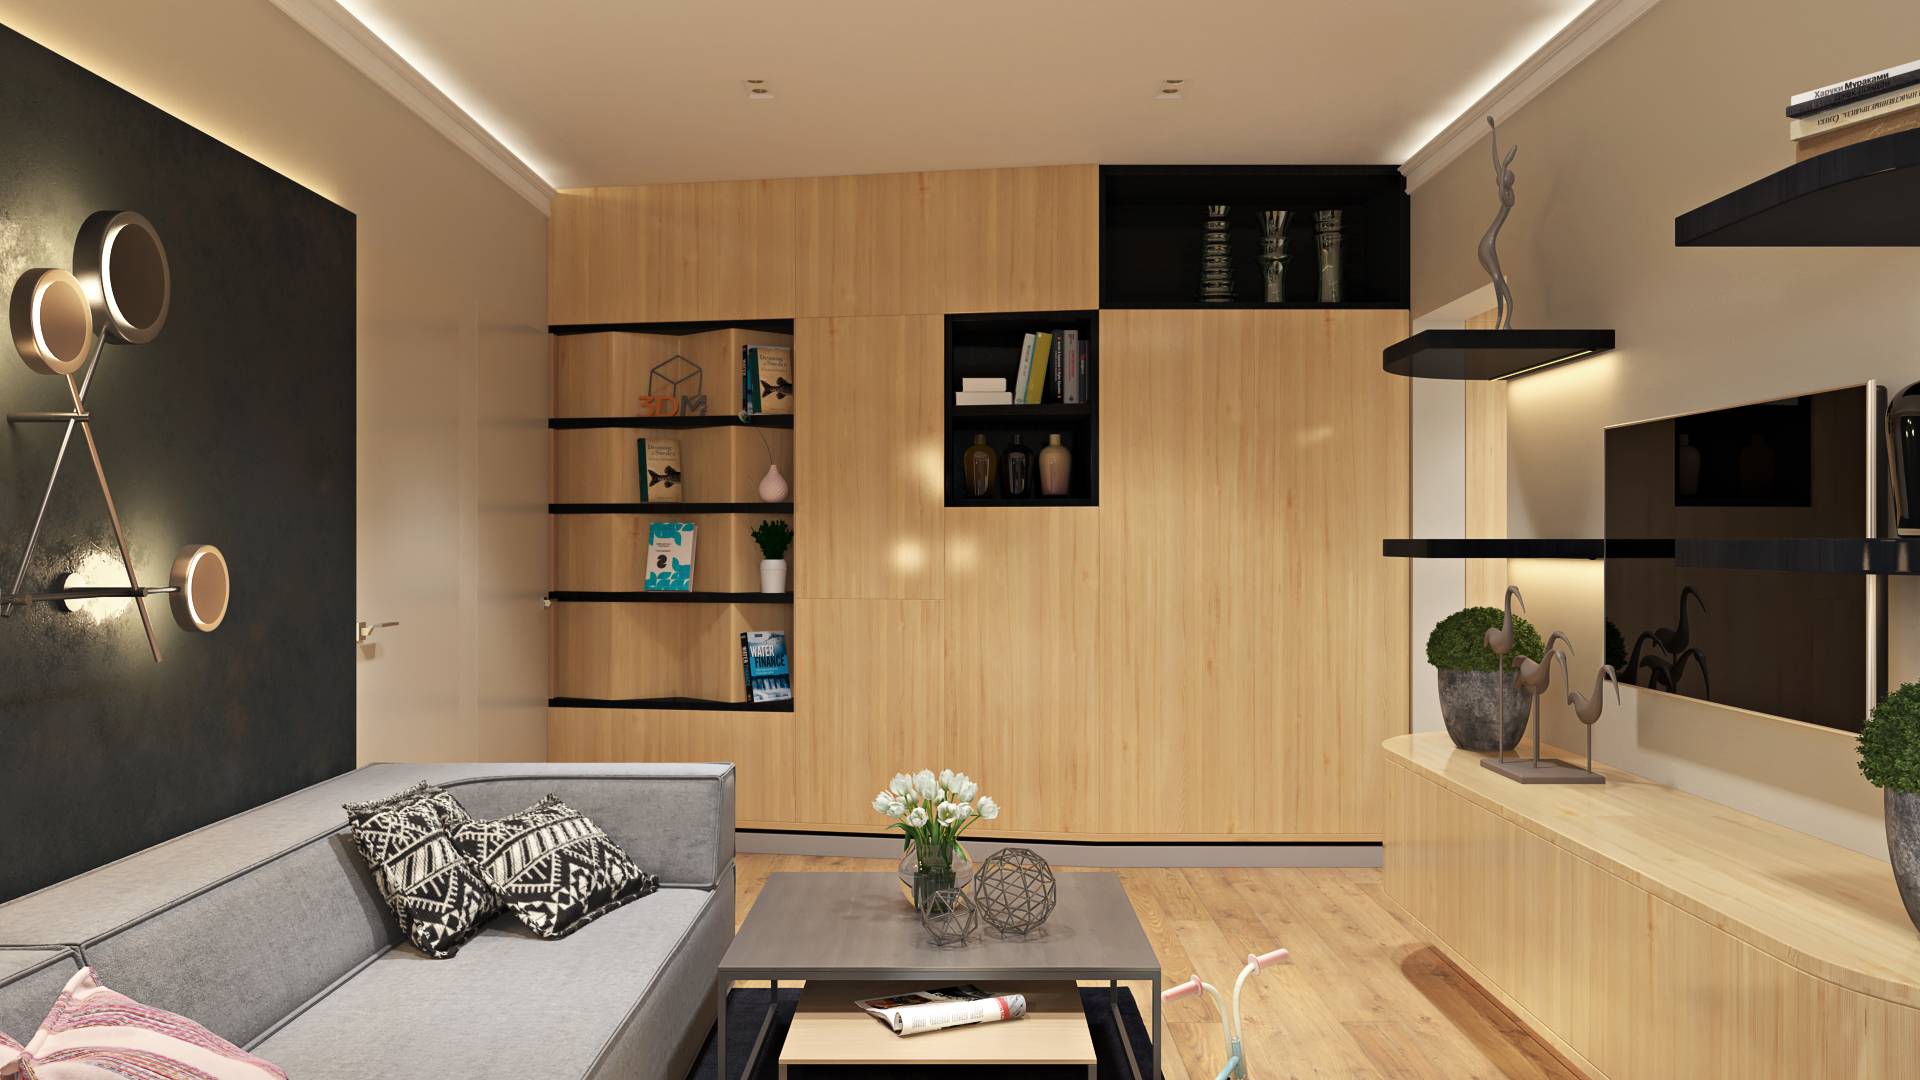 П-44 планировка с размерами для 2 х комнатной квартиры: дизайн и перепланировка